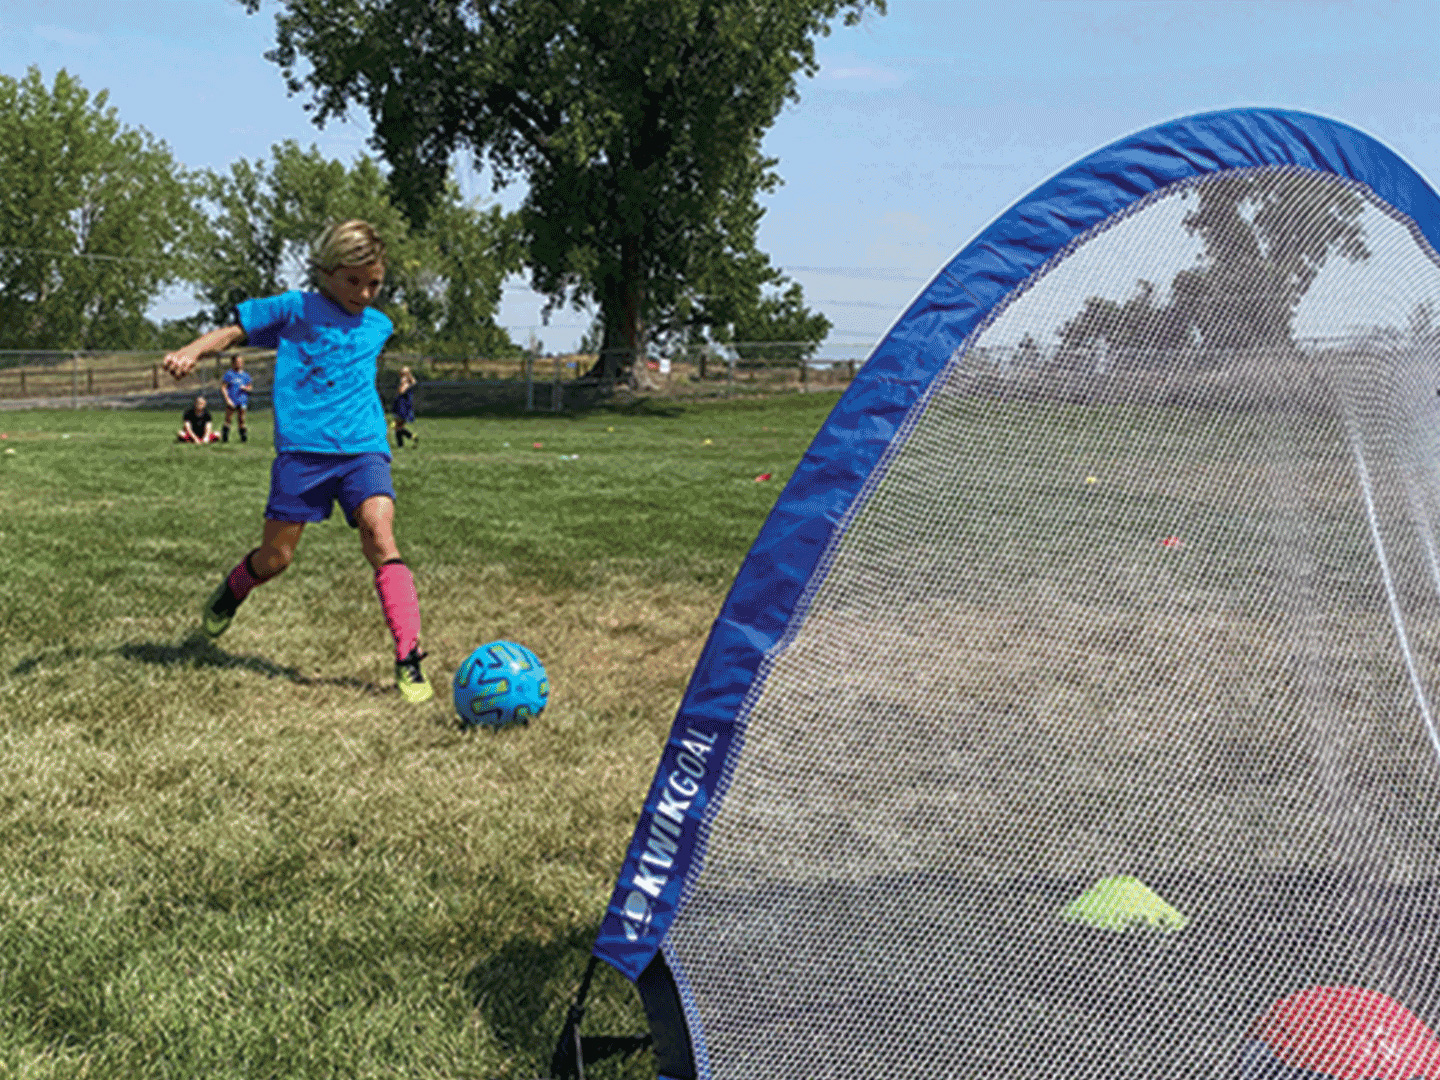 Boy shooting ball into soccer net